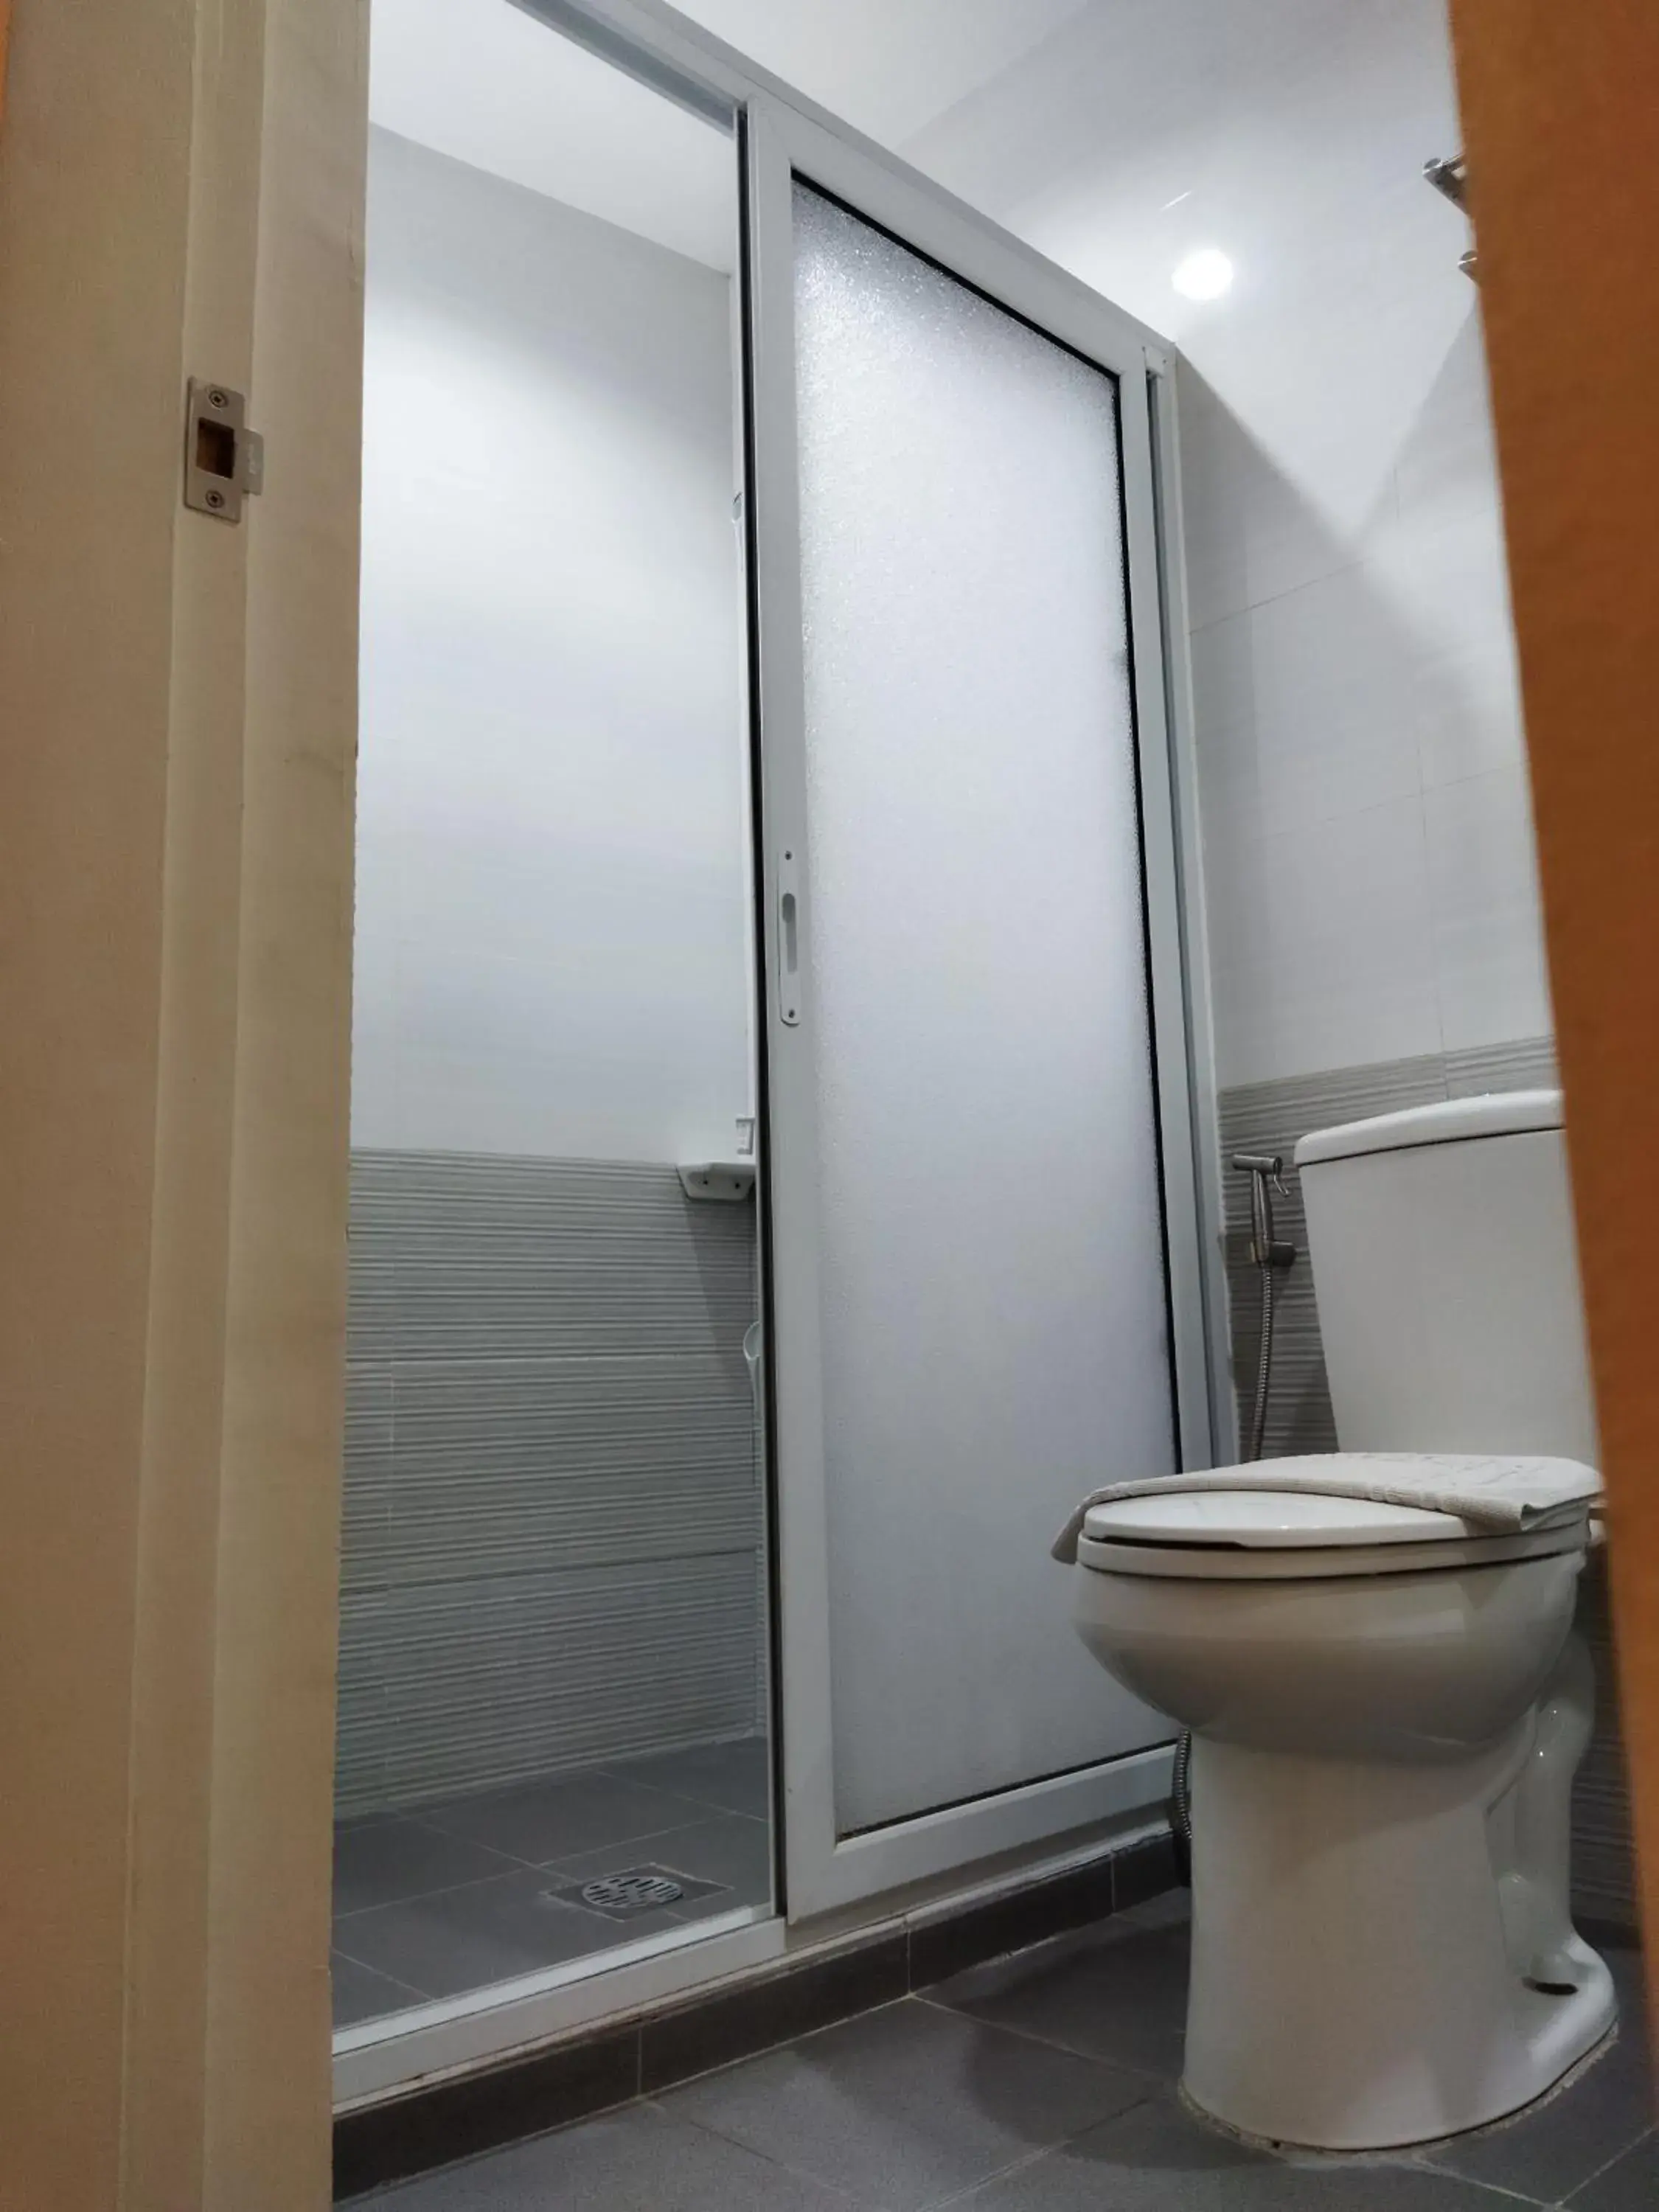 Bathroom in NS Royal Hotel